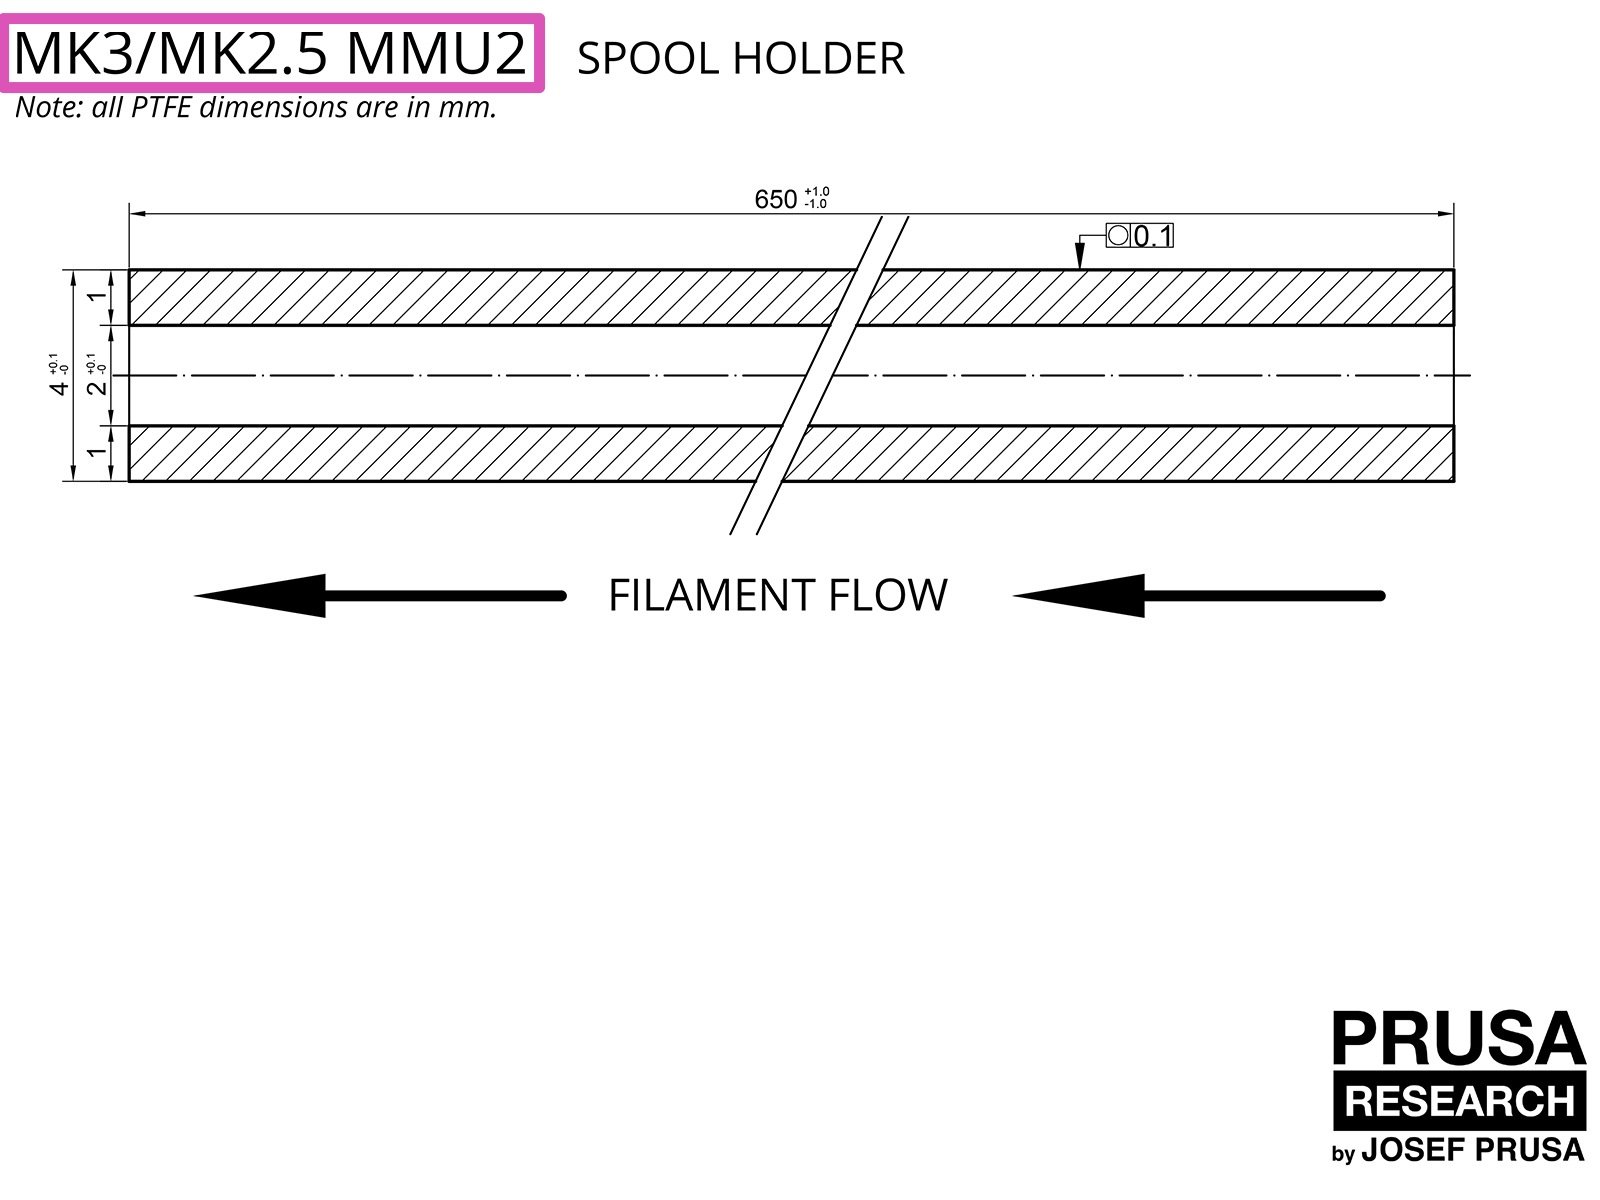 VERALTET: PTFE für den MK3/MK2.5 MMU2 (Teil 1)